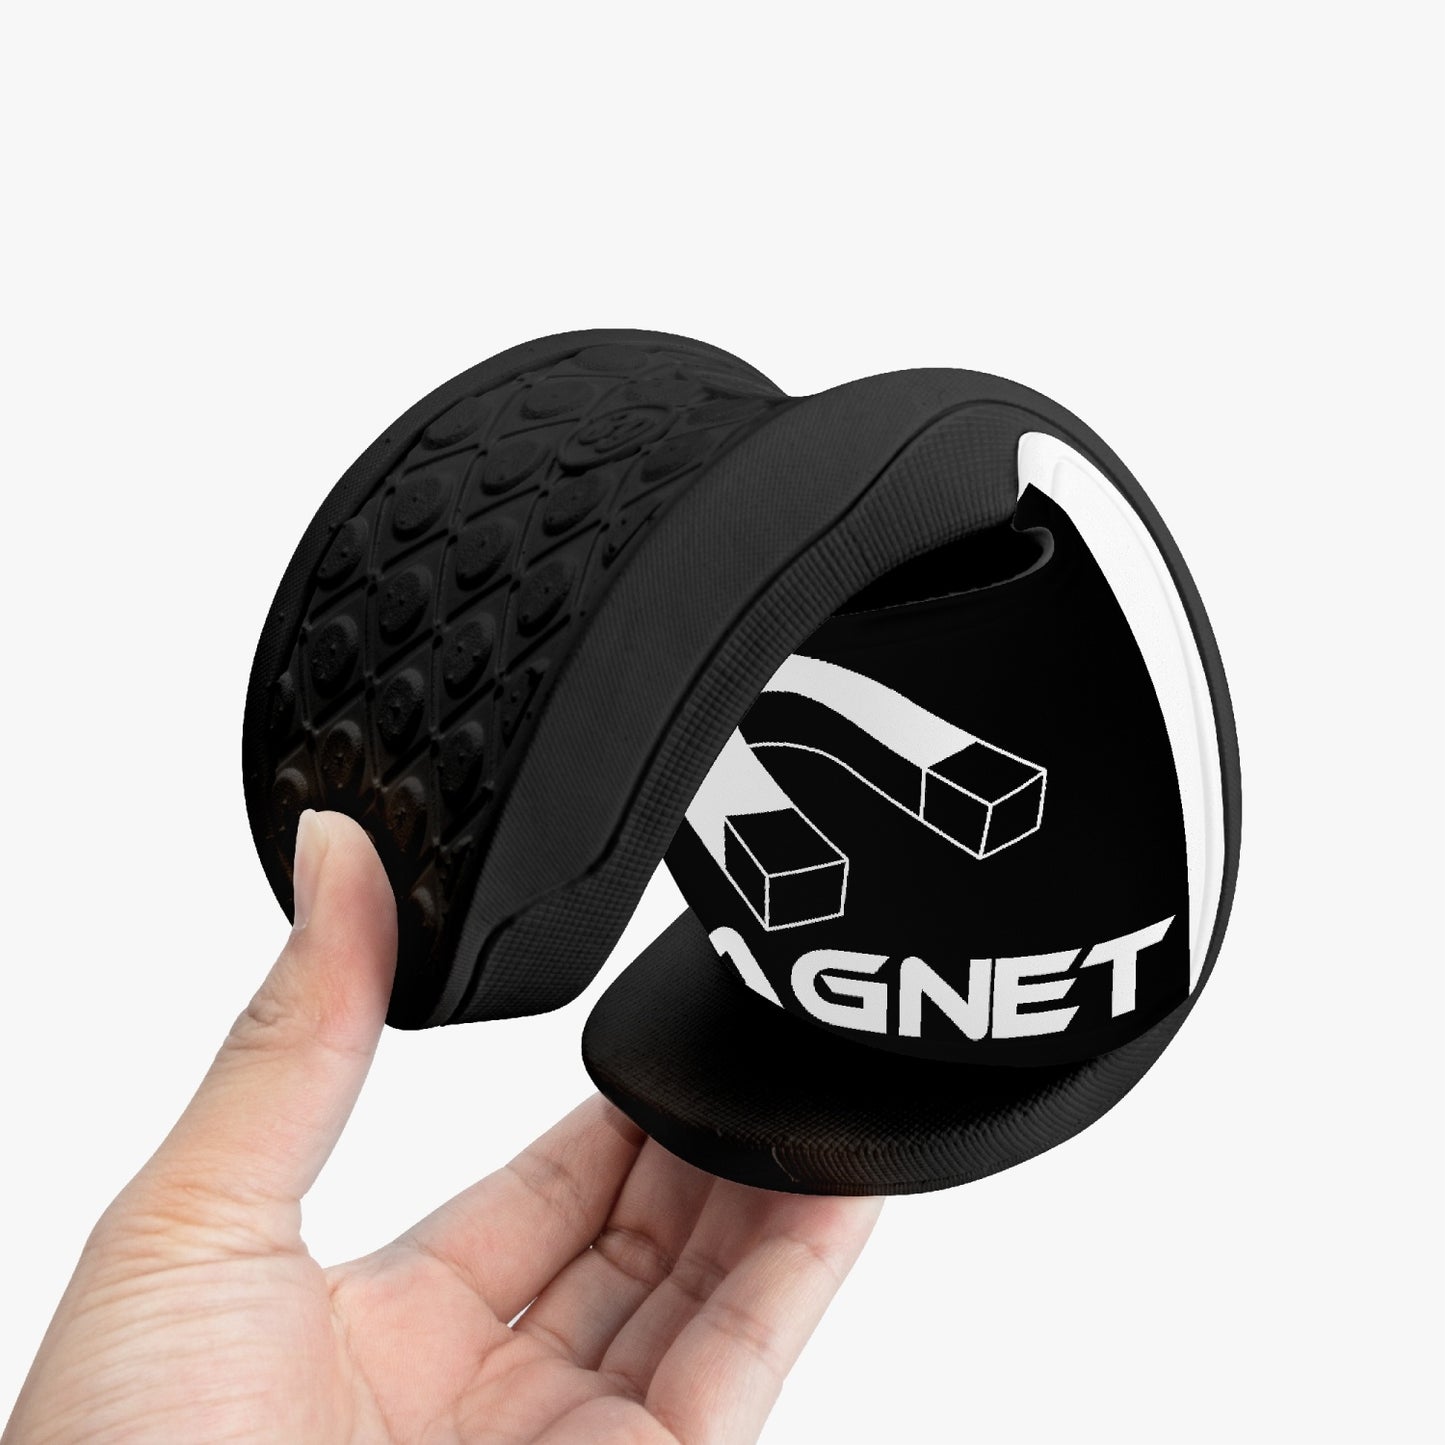 Magnet Slides Casual Sandals - Black